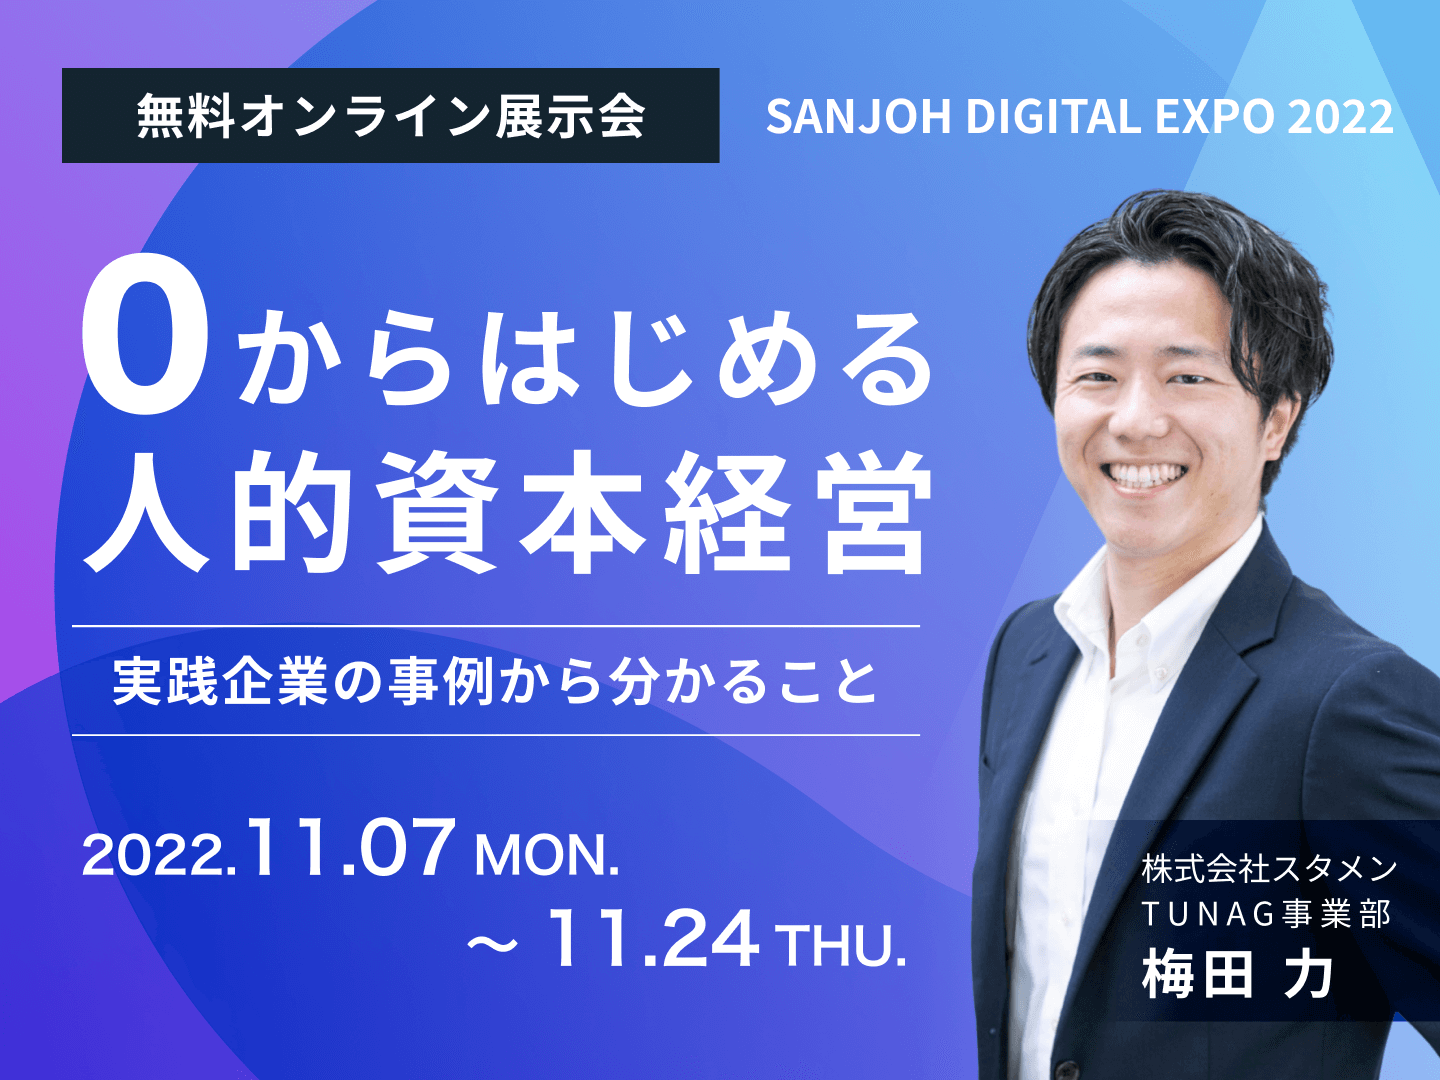 TUNAG、北海道の中小企業の働き方“変革”を支援するオンライン展示会「SANJOH DIGITAL EXPO 2022」に出展！